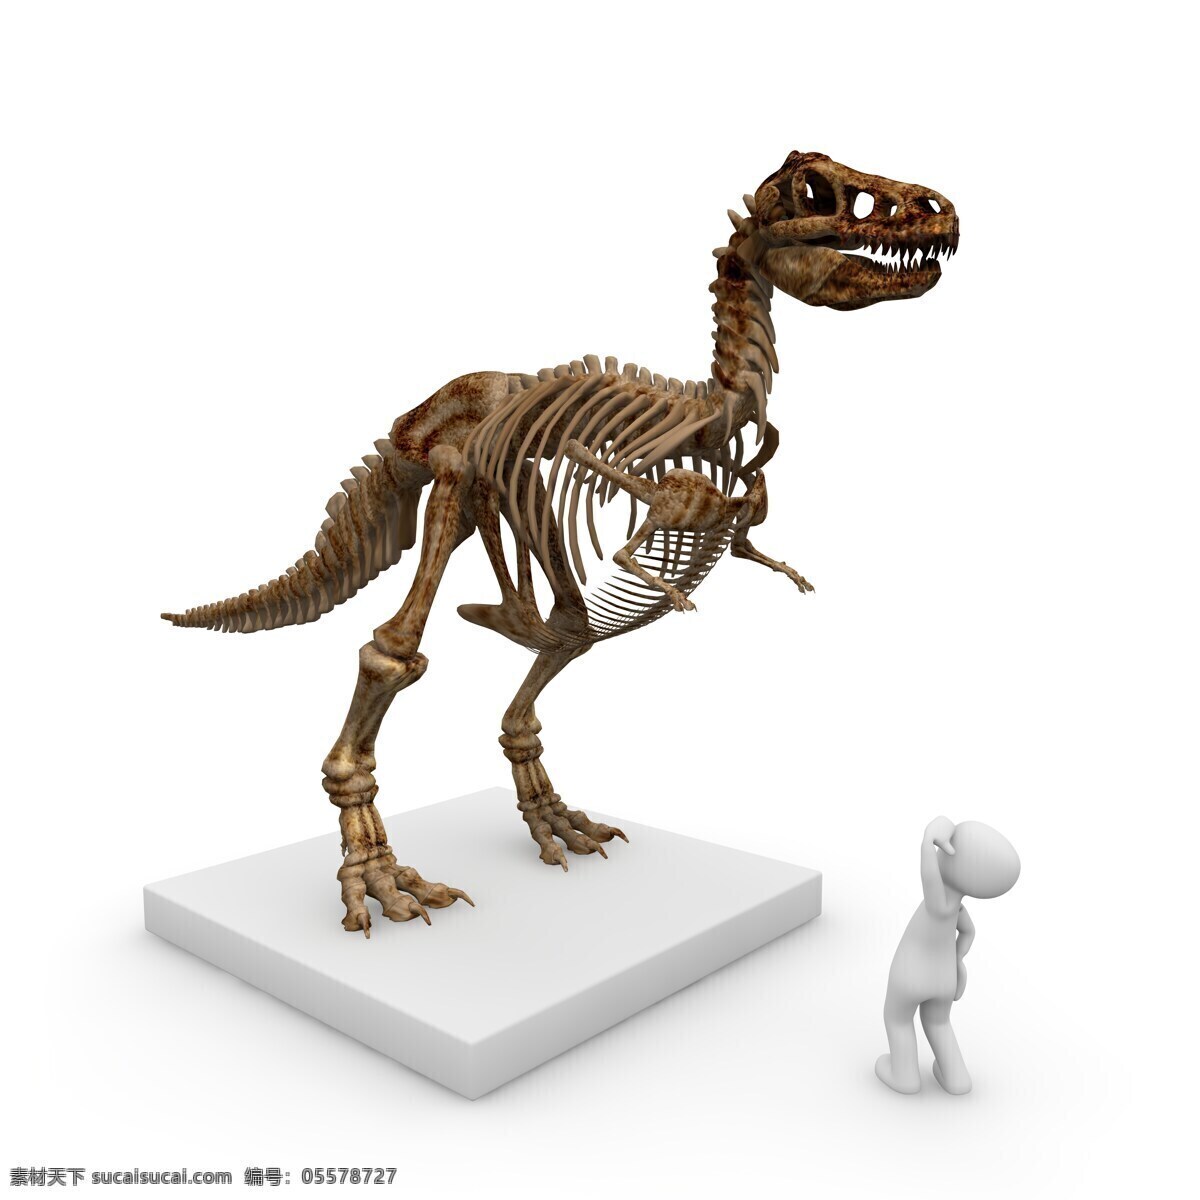 恐龙骨 恐龙 侏罗纪 侏罗纪公园 动物 白垩纪 暴龙 翼龙 三角龙 恐龙模型 古生物 灭绝 灭绝动物 生物世界 其他生物